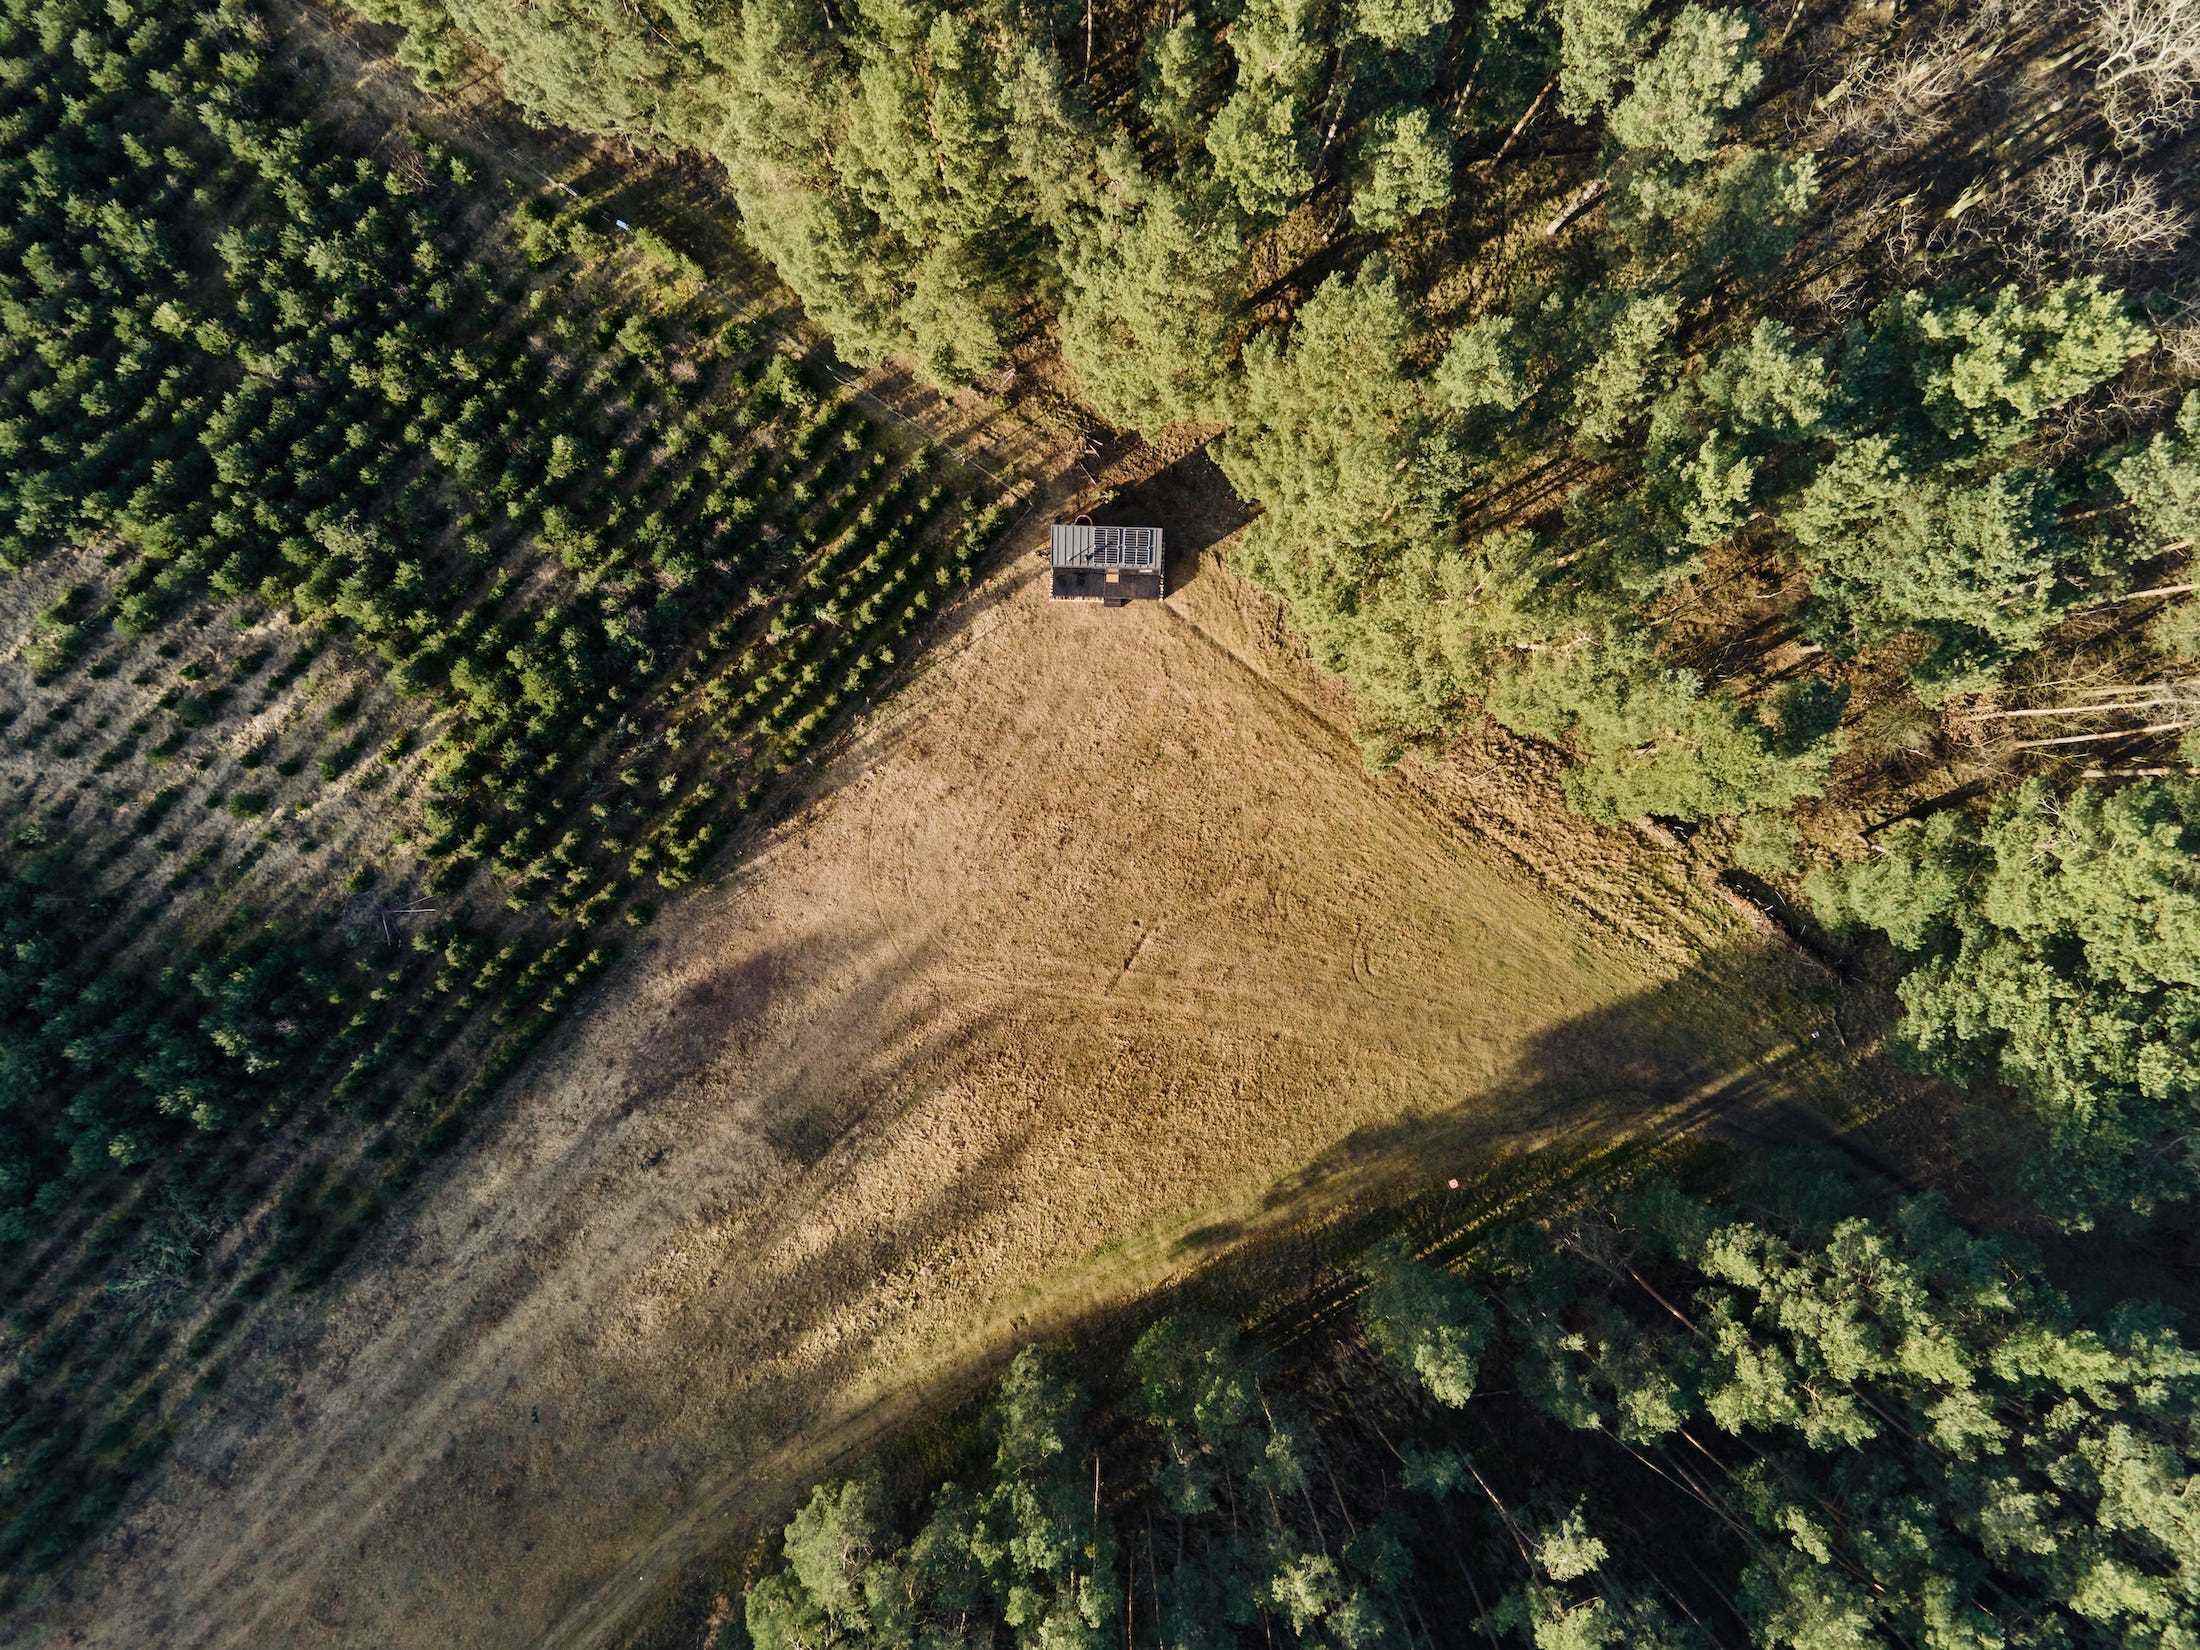 Eine Draufsicht auf eine Raus-Hütte in der Natur, umgeben von Bäumen und offenen Feldern.